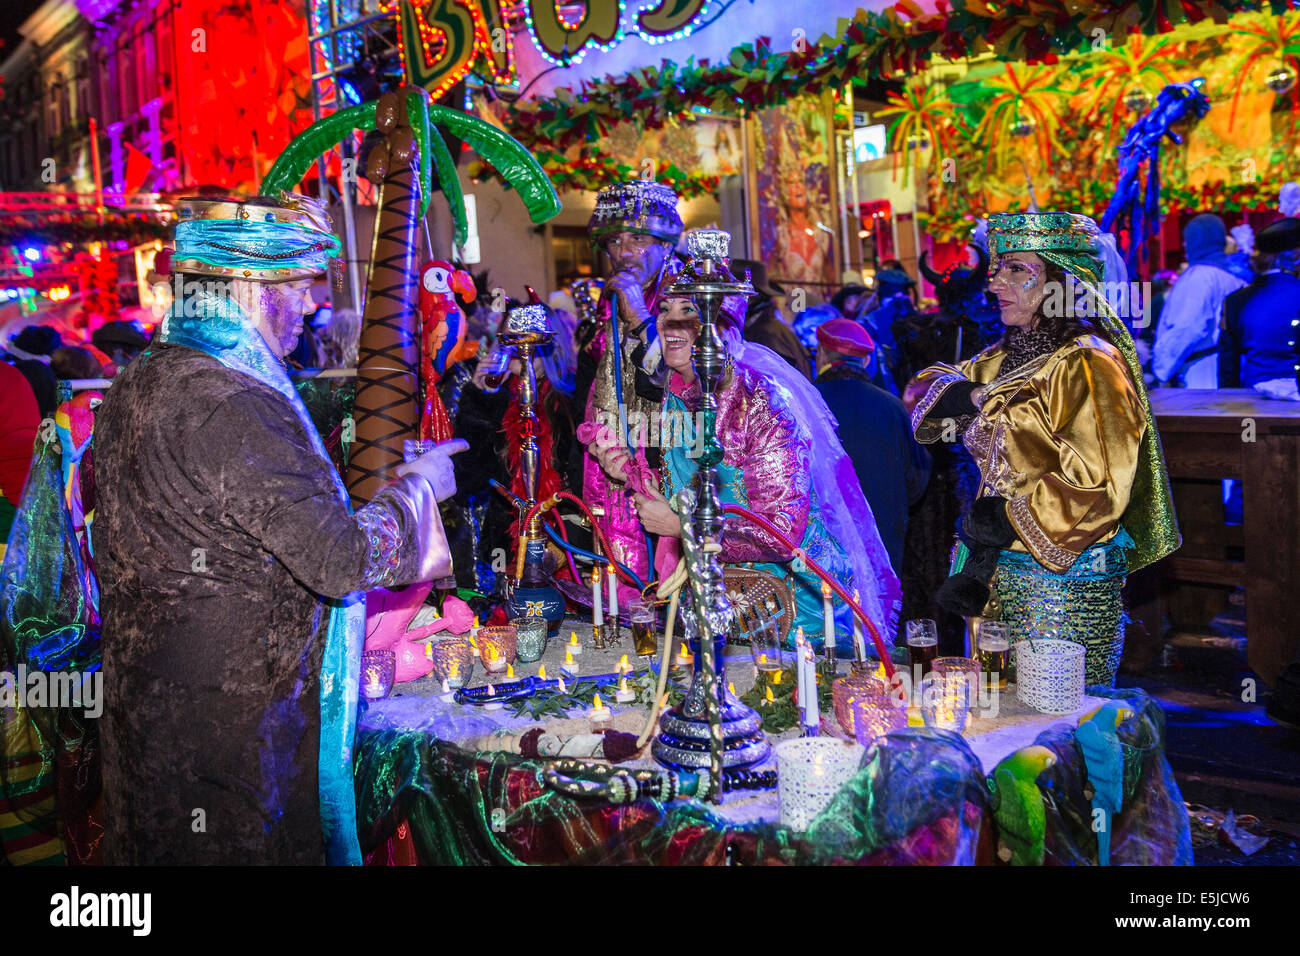 Los Países Bajos, Maastricht, festival de carnaval. Las murgas de la gente vendiendo luces y shishas o narguiles en plaza Vrijthof Foto de stock